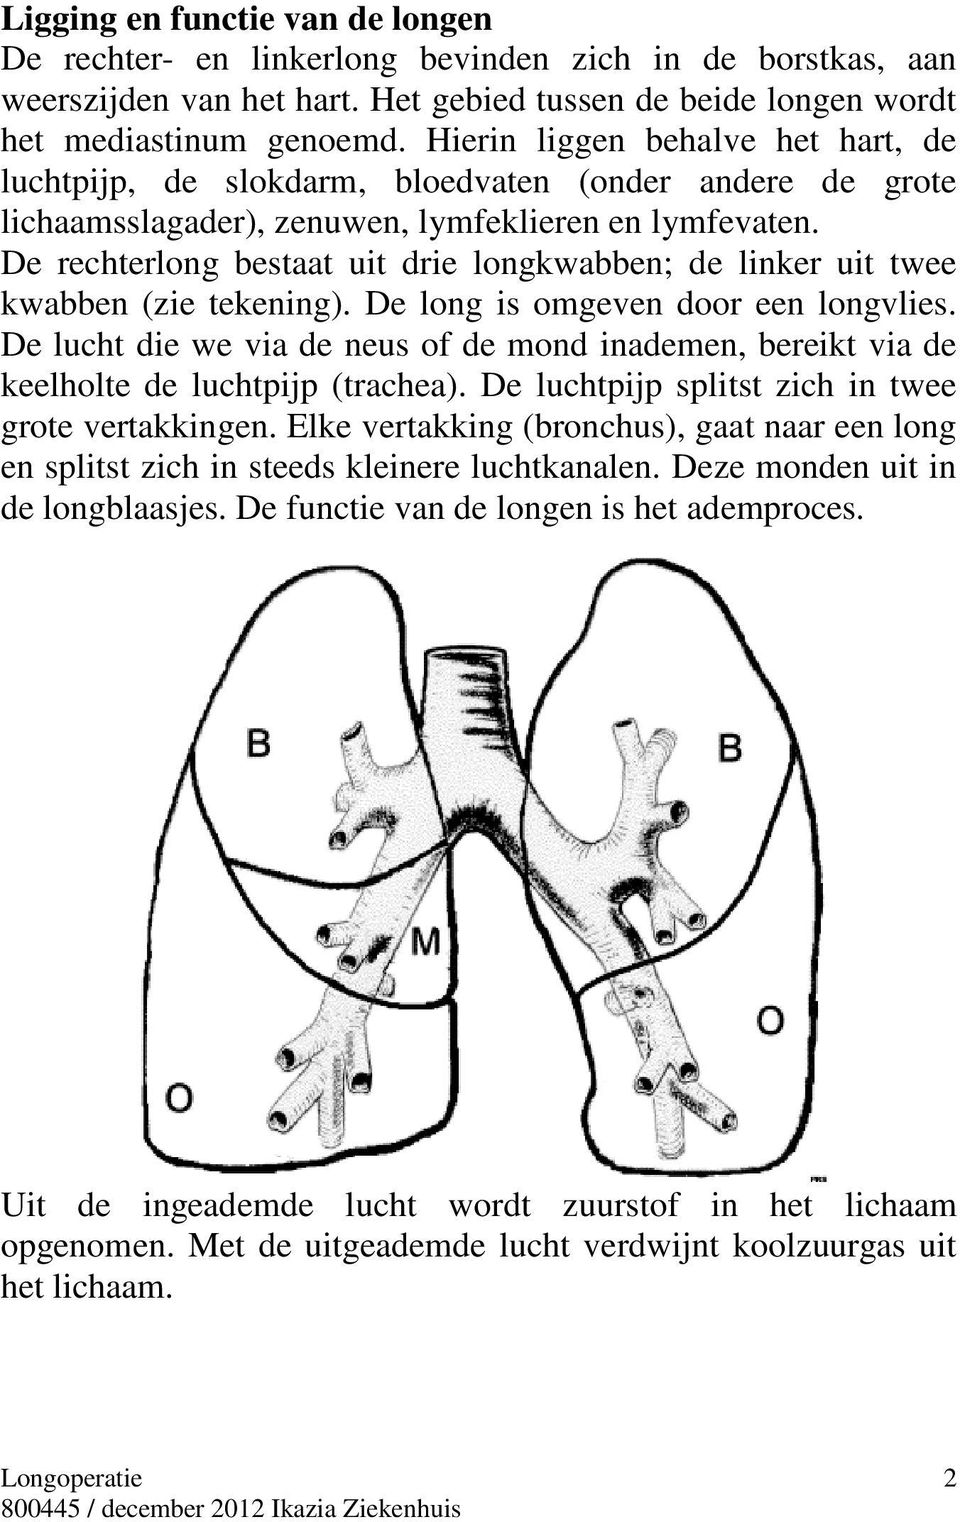 De rechterlong bestaat uit drie longkwabben; de linker uit twee kwabben (zie tekening). De long is omgeven door een longvlies.